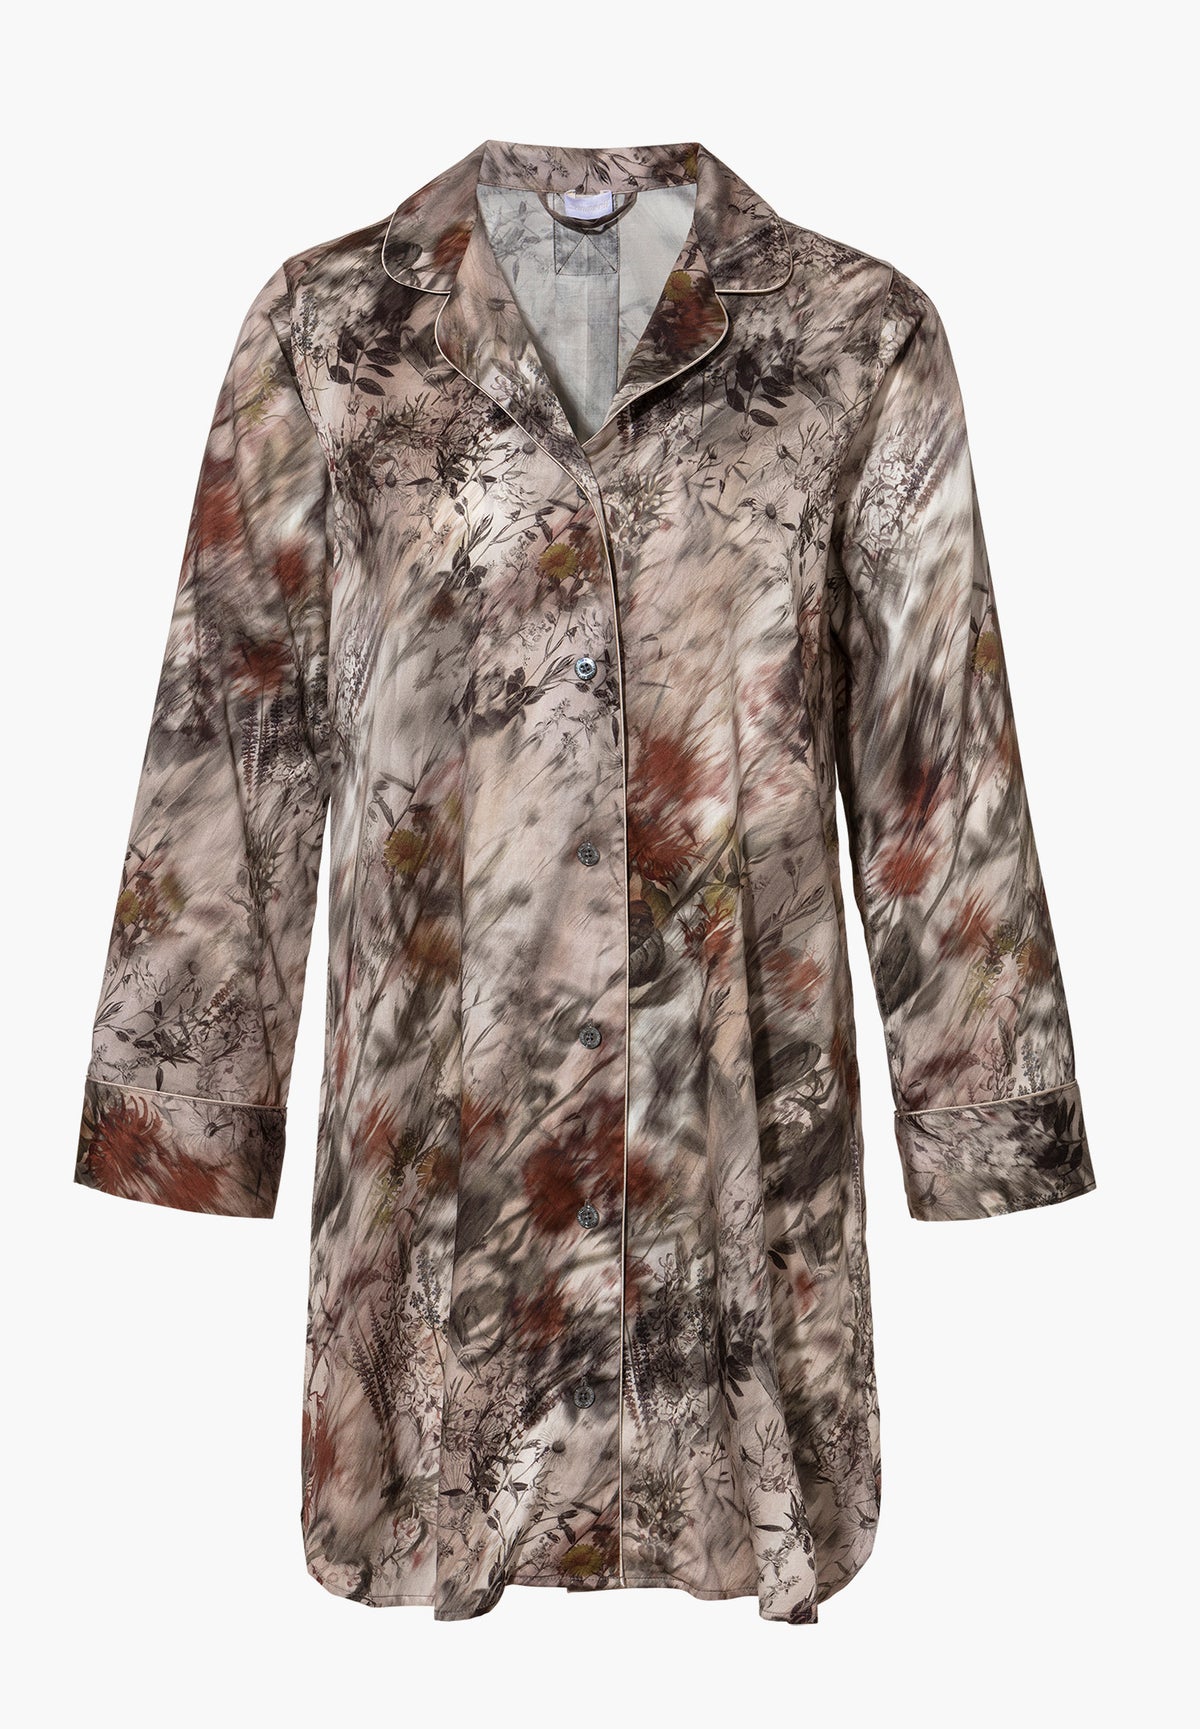 Cotton Sateen Print | Sleepshirt Long Sleeve - winter florals